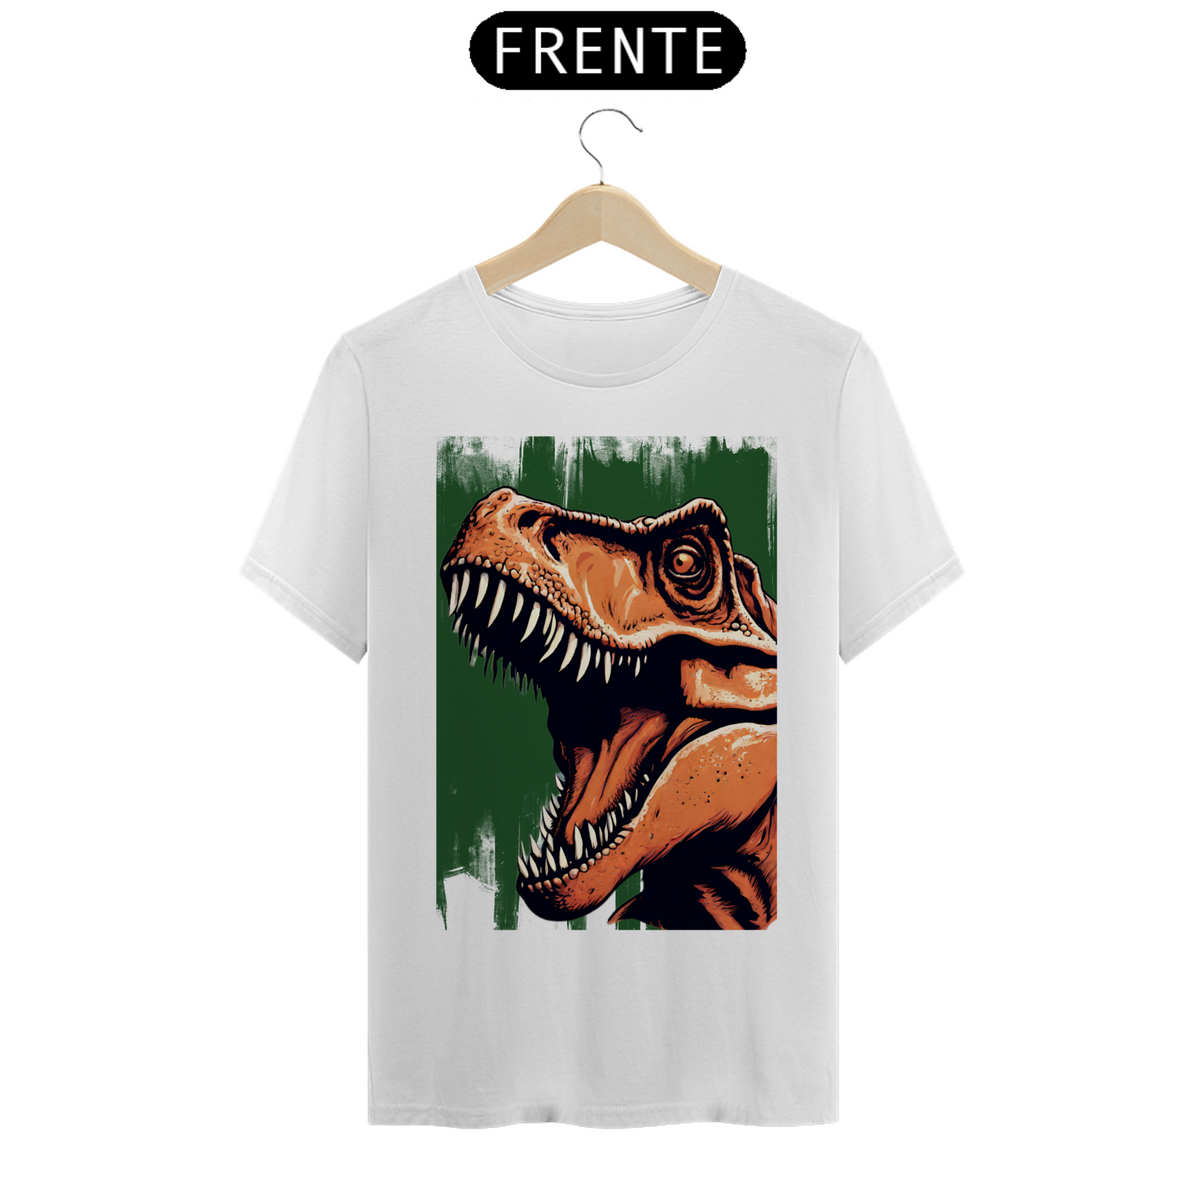 Nome do produto: Jurassic t shirt